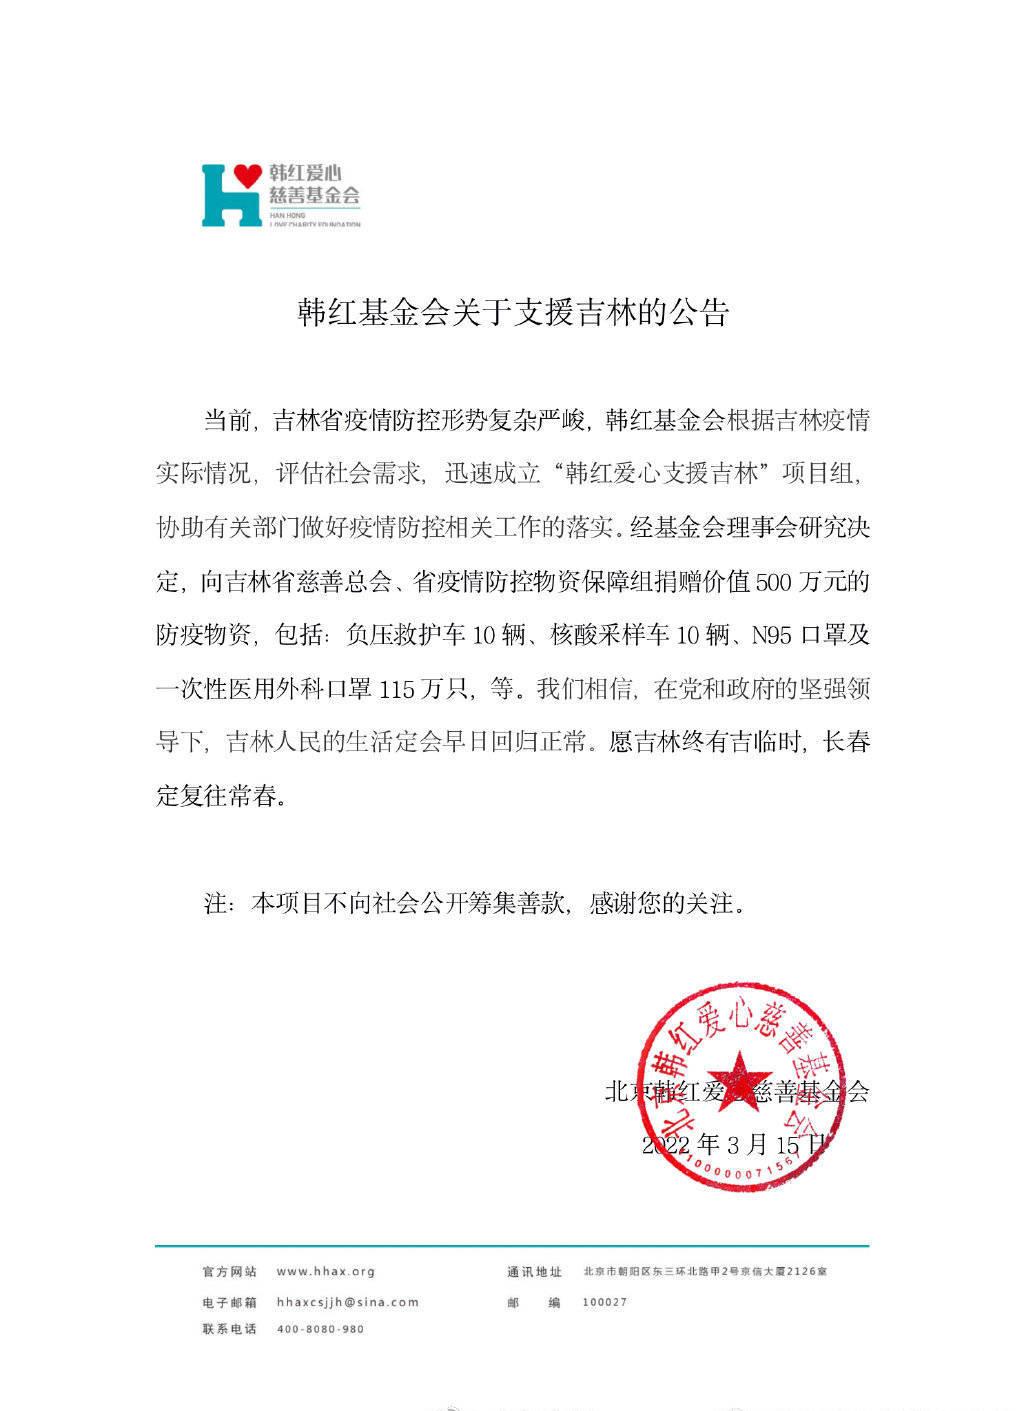 韓紅愛心慈善基金會公布支援吉林疫情項目進展 肖戰易烊千璽等默默捐款捐物資 